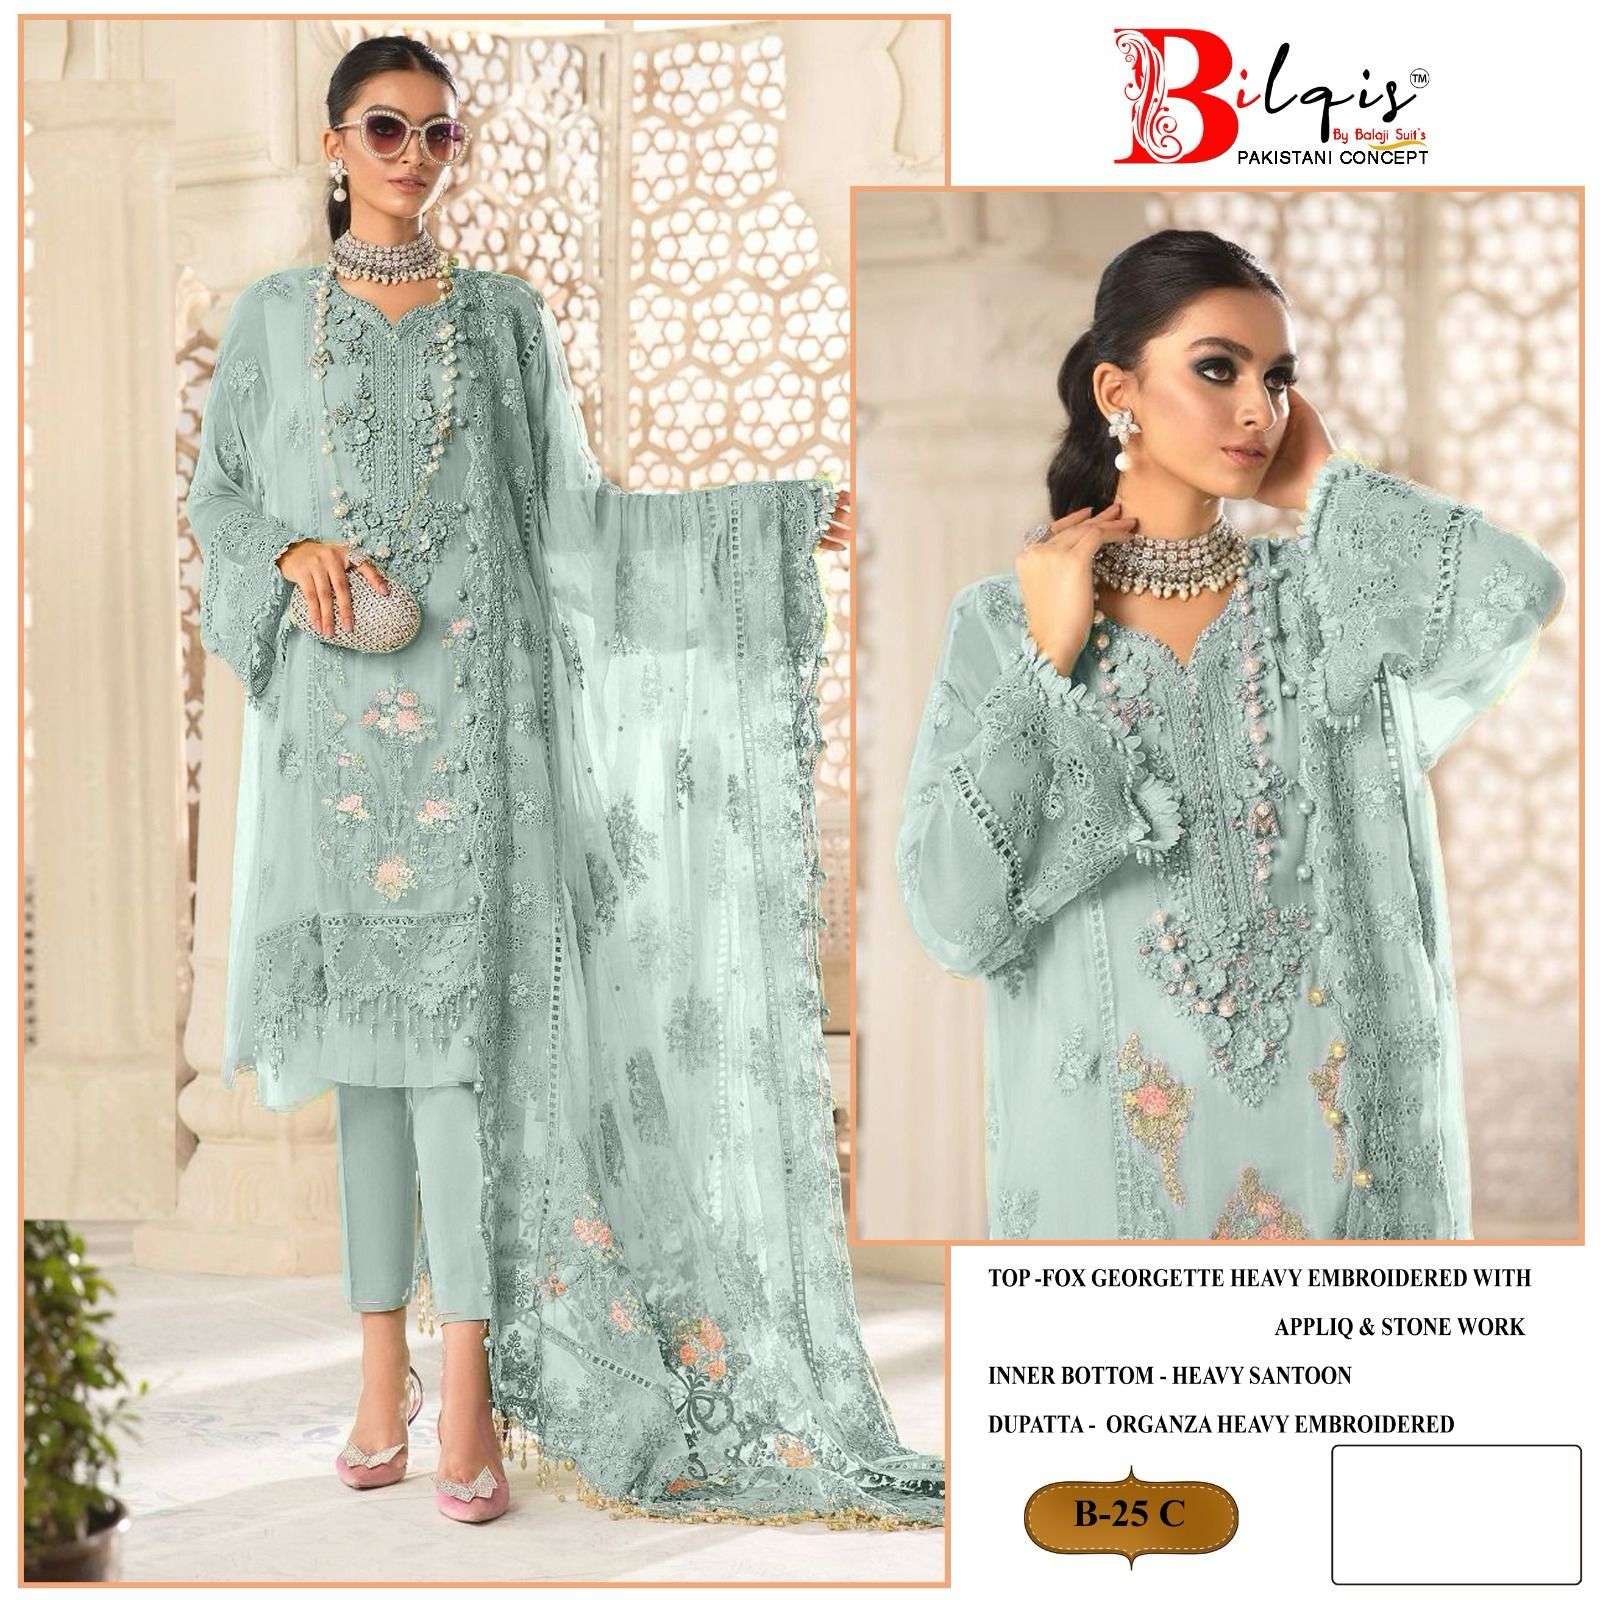 Bilqis B 25 A TO D Georgette Pakistani Suit Wholesale catalog